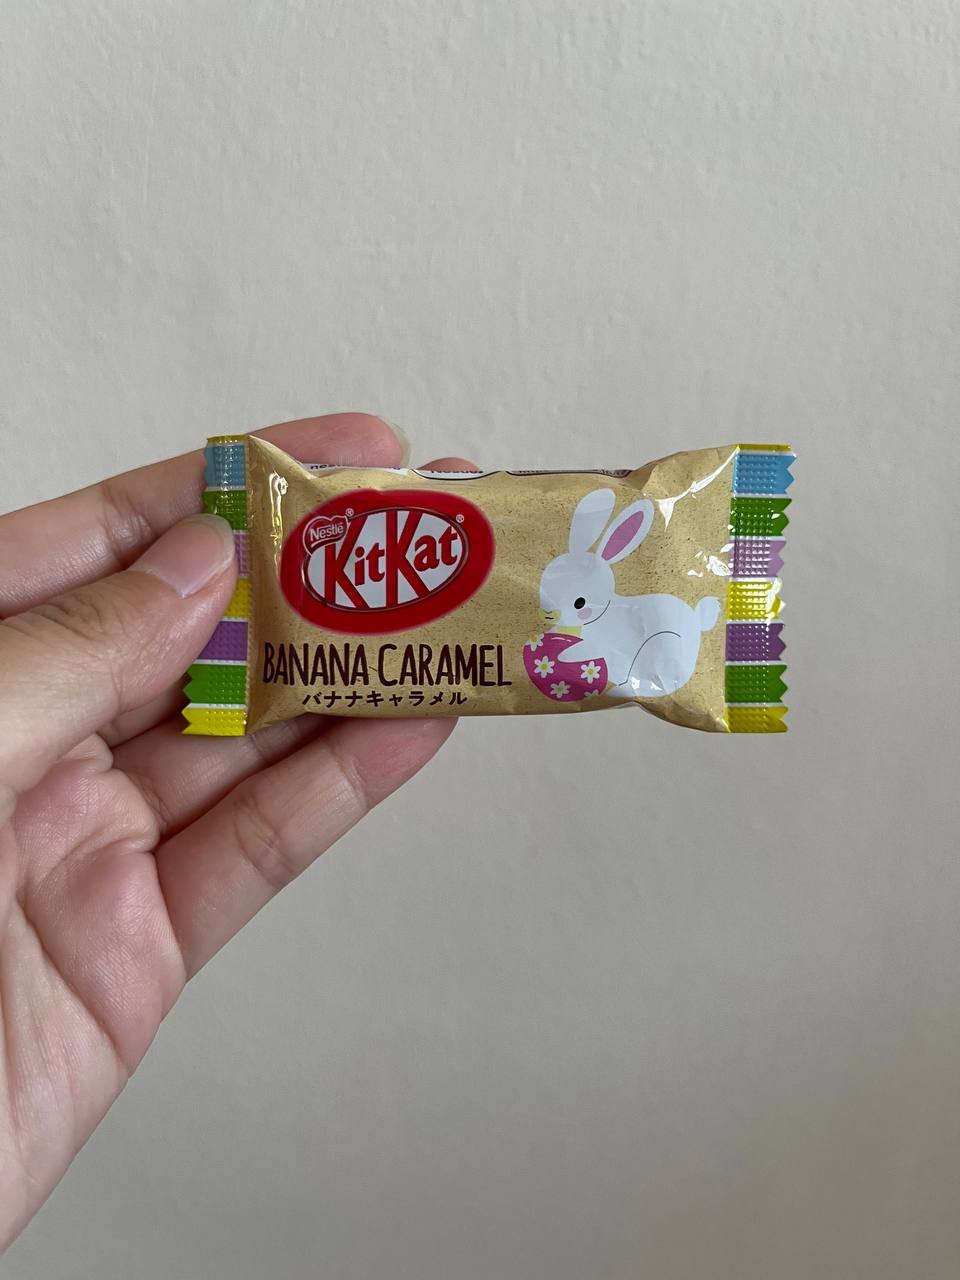 Japanese Kit Kat Sea Salt Flavor KitKat White Chocolates Bar; 11 Mini Bar 